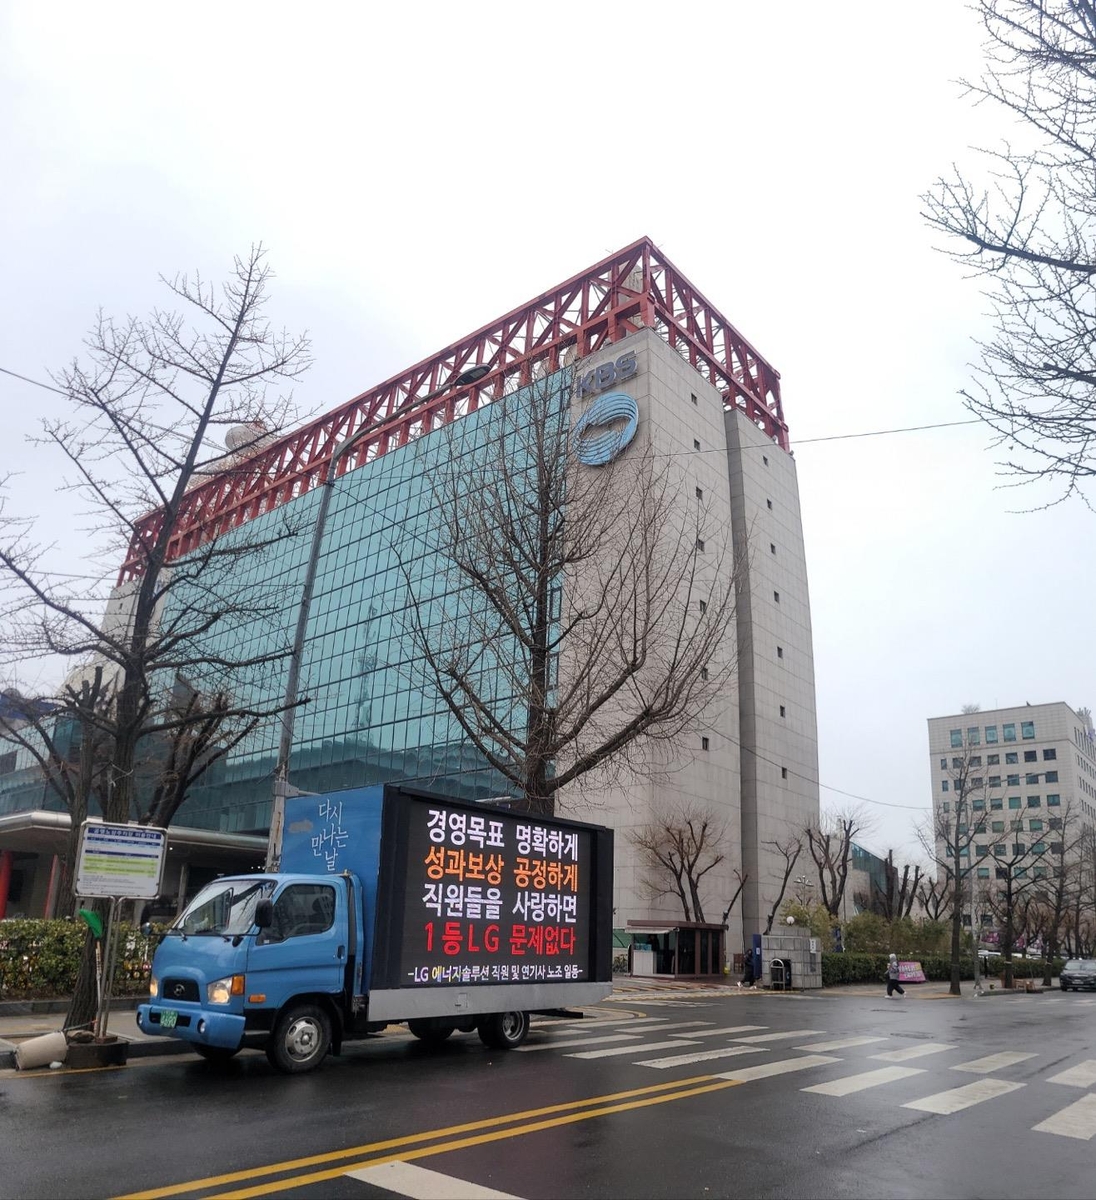 LG엔솔 직원들 '1인 트럭 시위'…"이익 바탕으로 성과급 산정을"